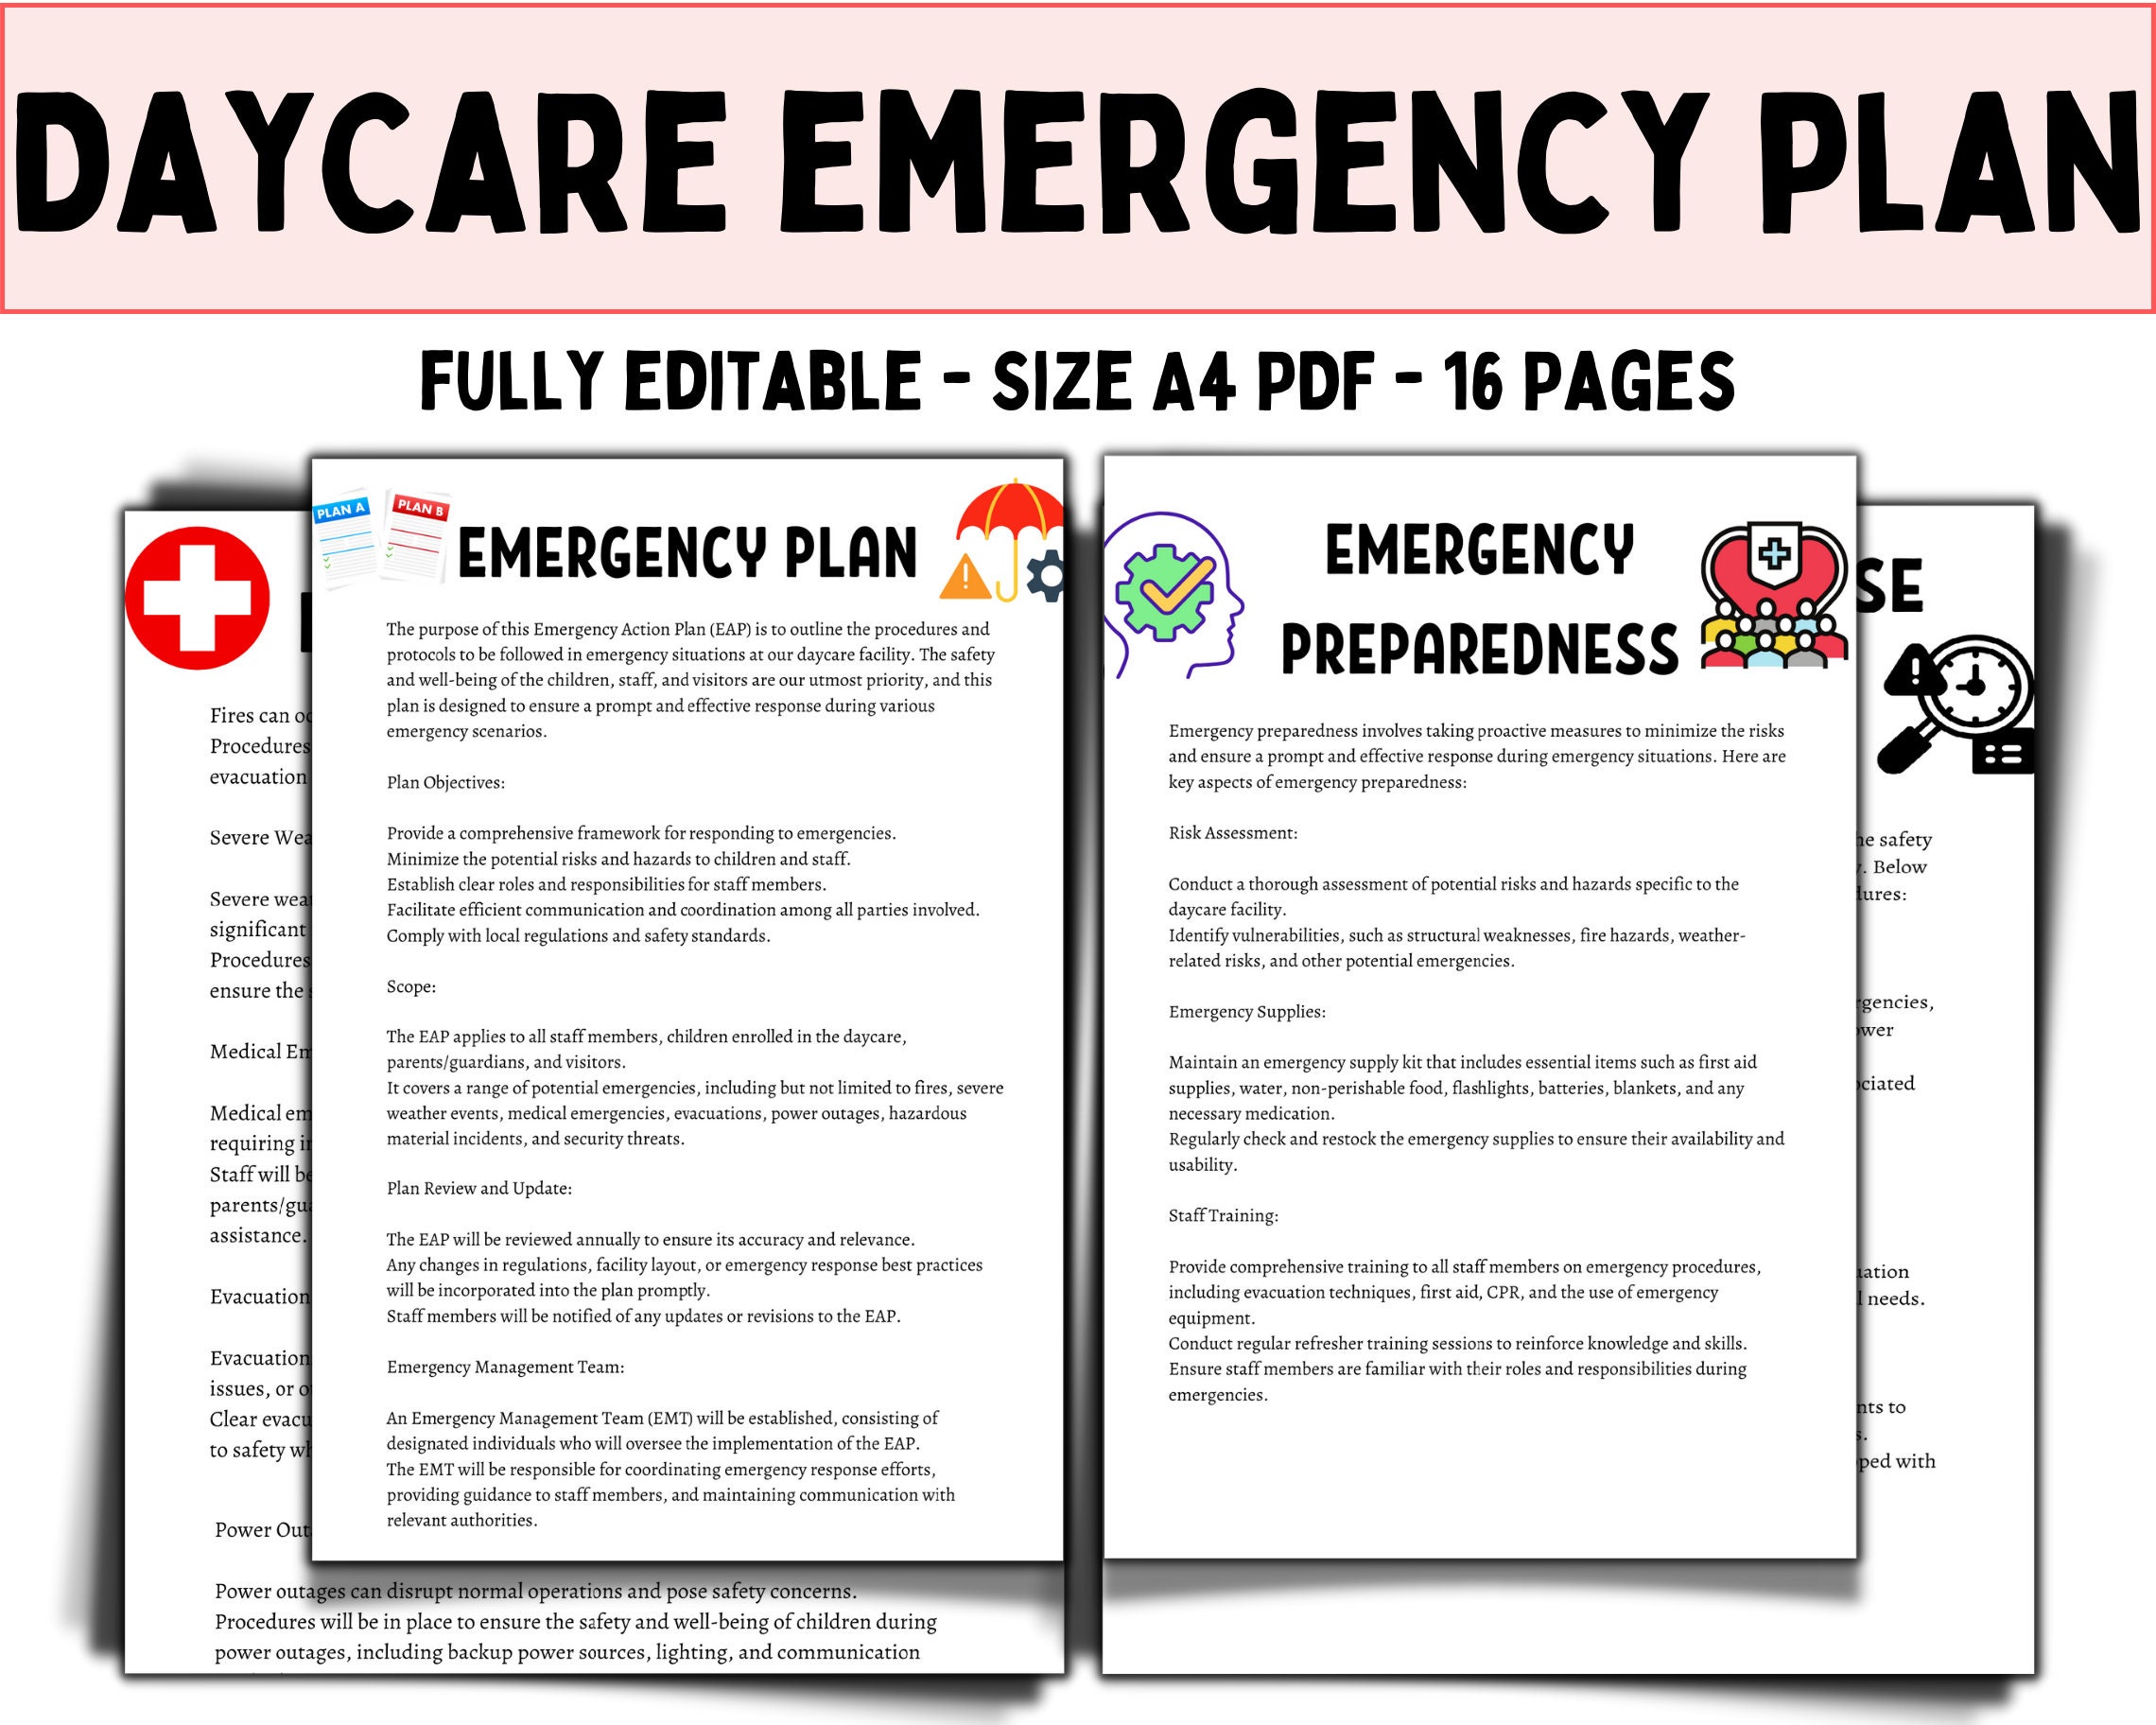 Child Care Emergency Preparedness - Child Care Aware® of America